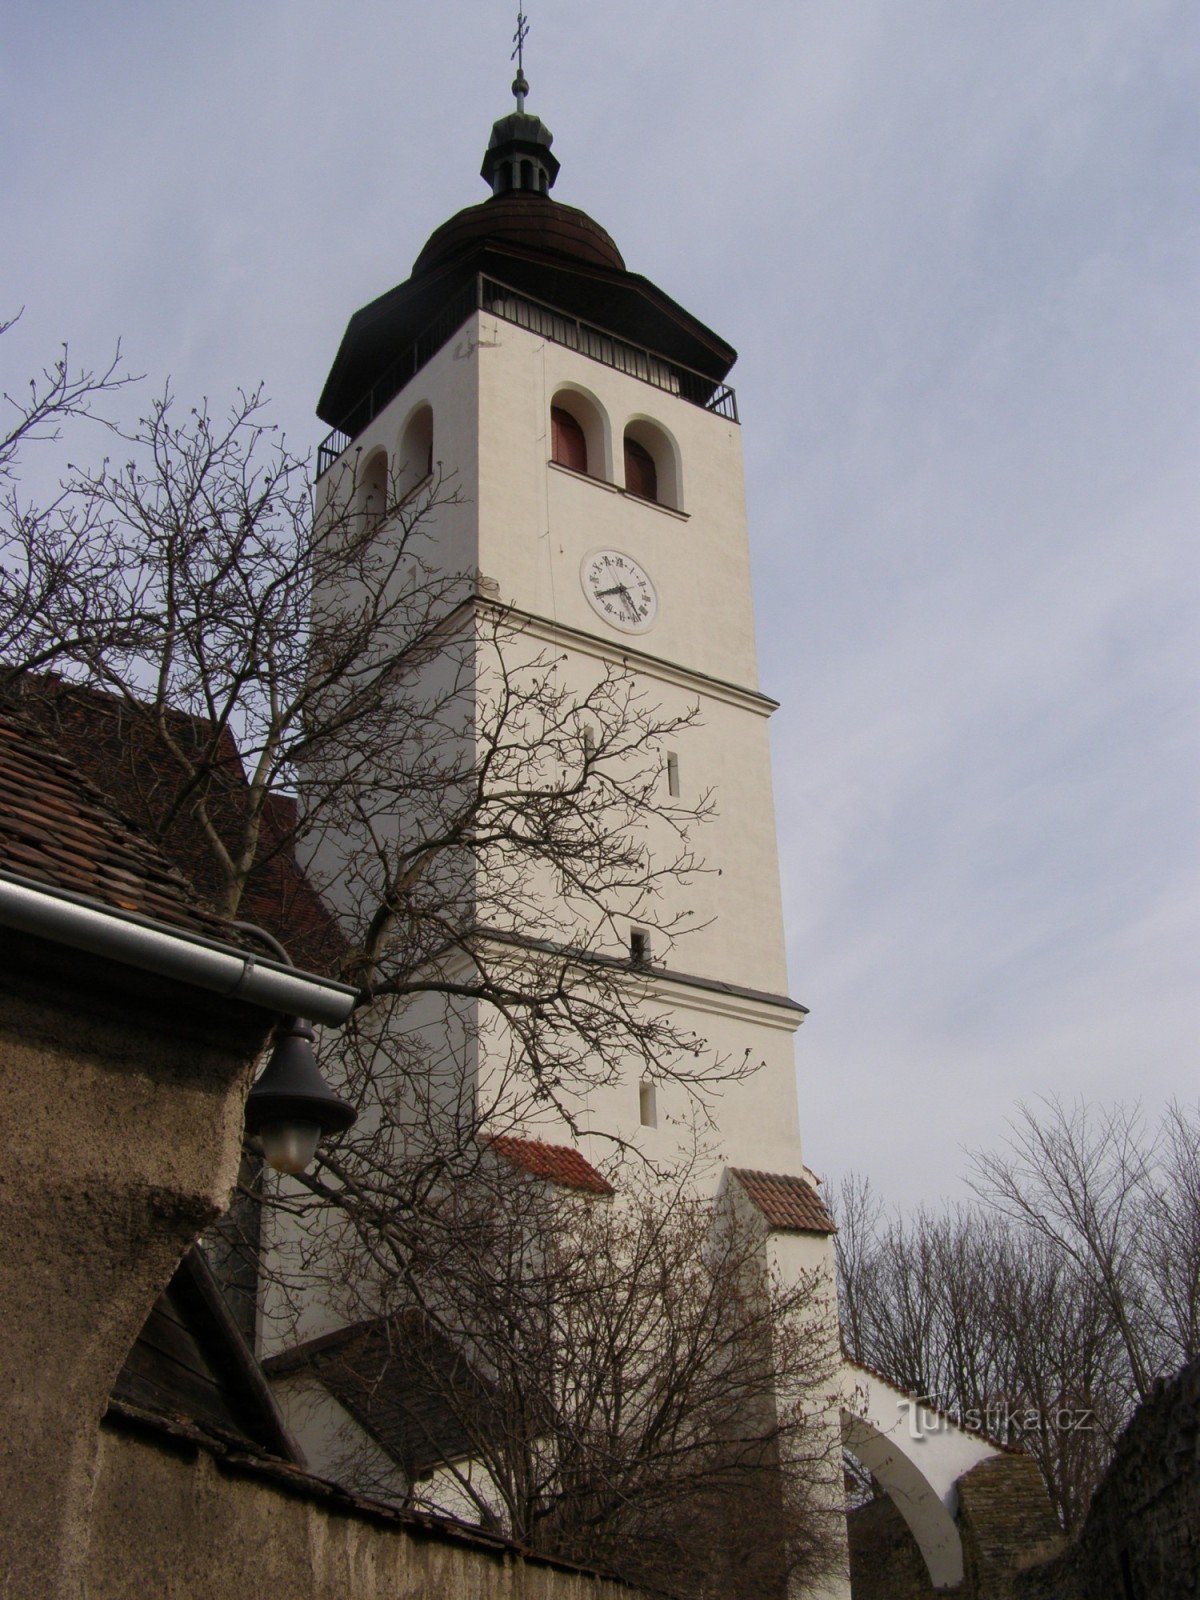 Nové Město nad Metují - Biserica Sfintei Treimi